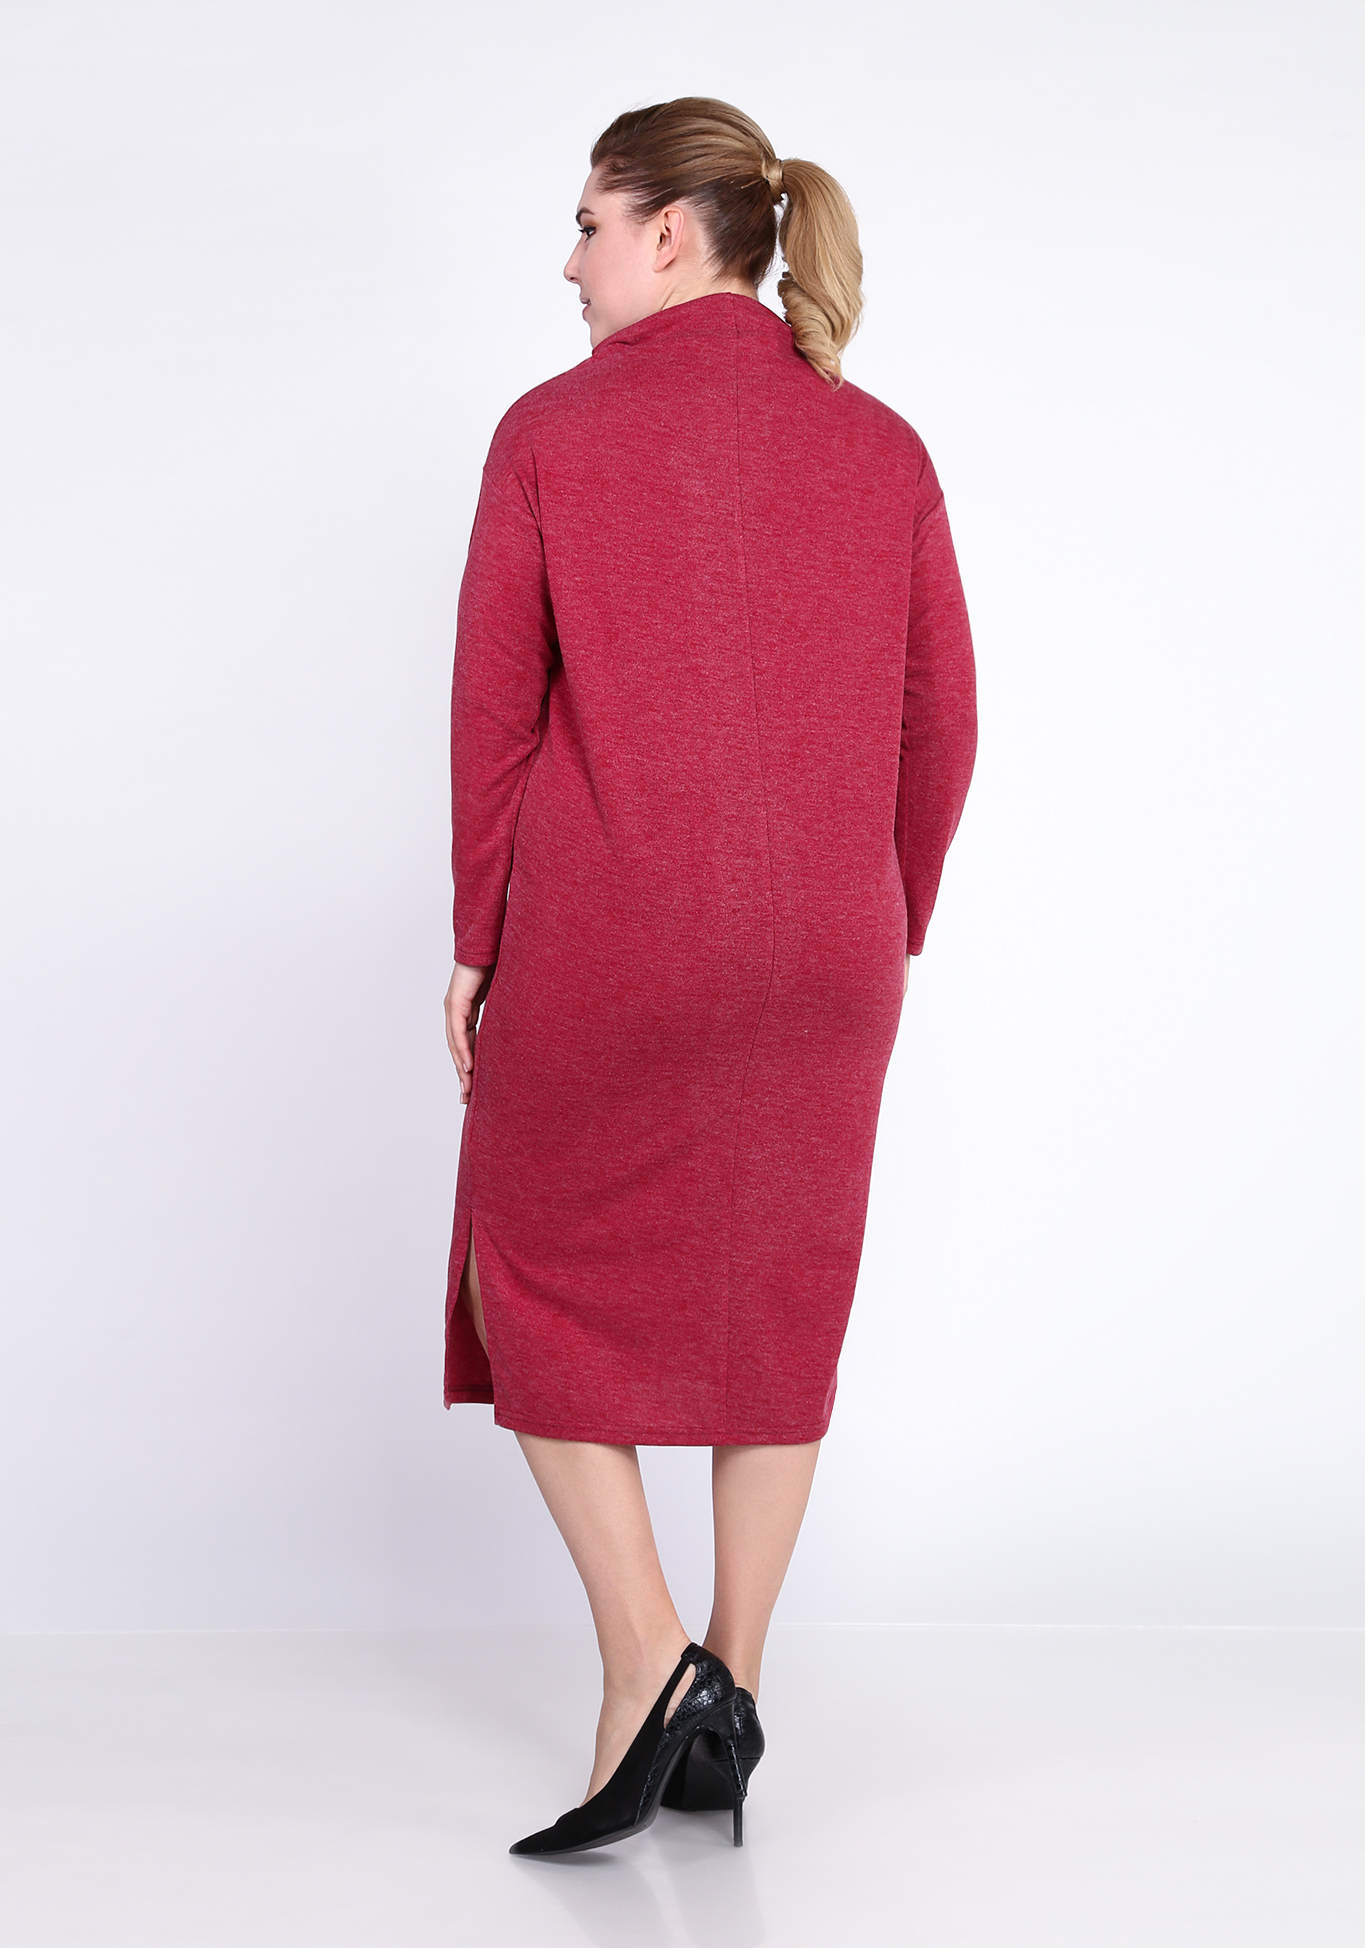 Платье с разрезом сбоку Alex Voice Collection, размер 50, цвет ягодный - фото 8